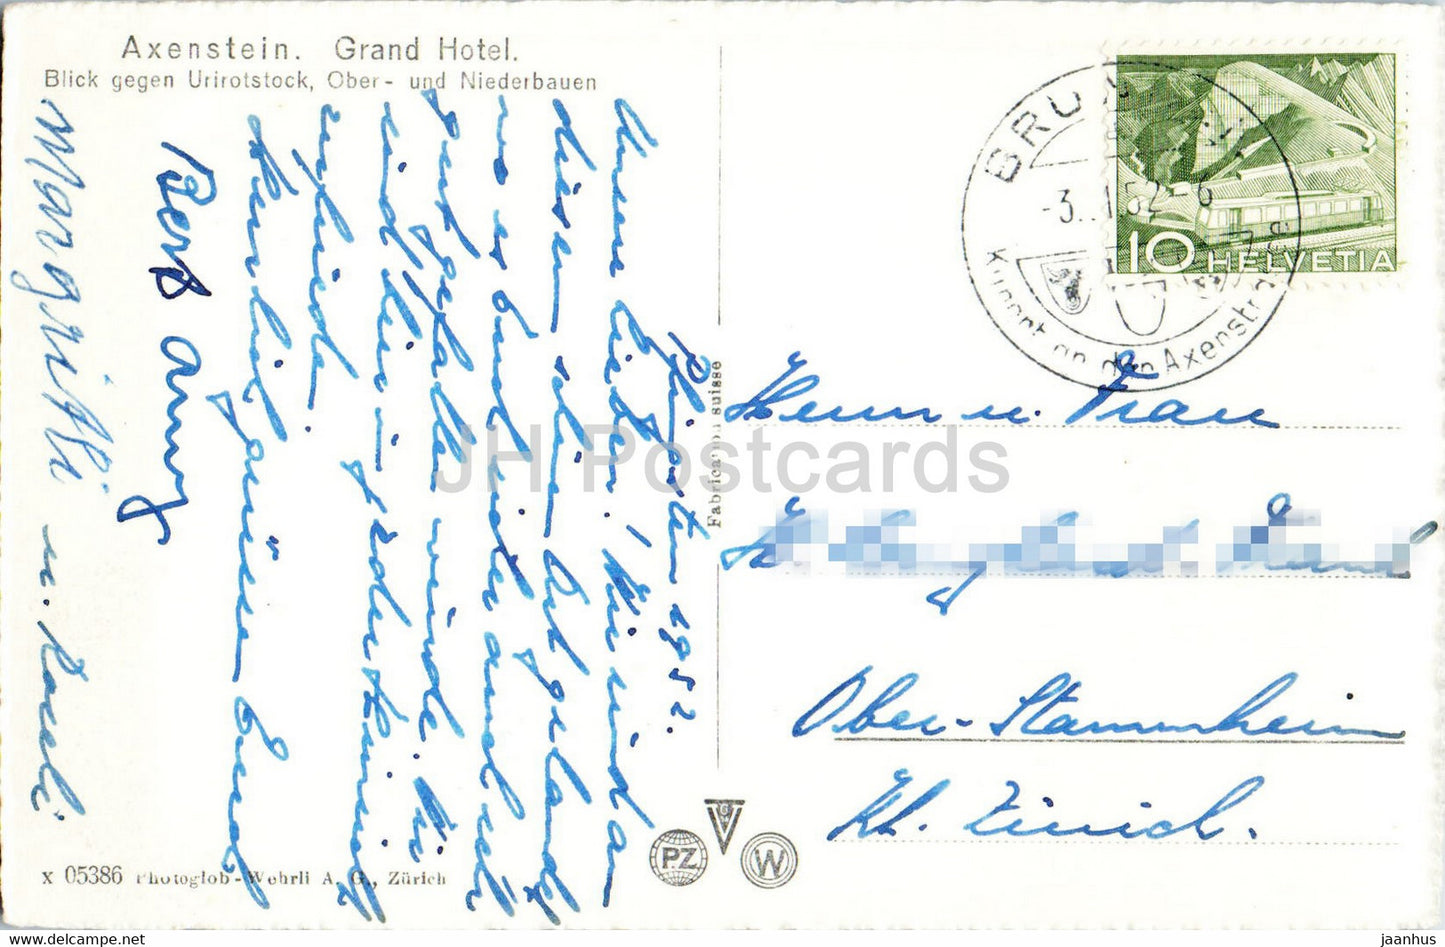 Axenstein - Grand Hotel - Blick gegen Urirotstock - Ober und Niederbauen - 1952 - old postcard - Switzerland - used